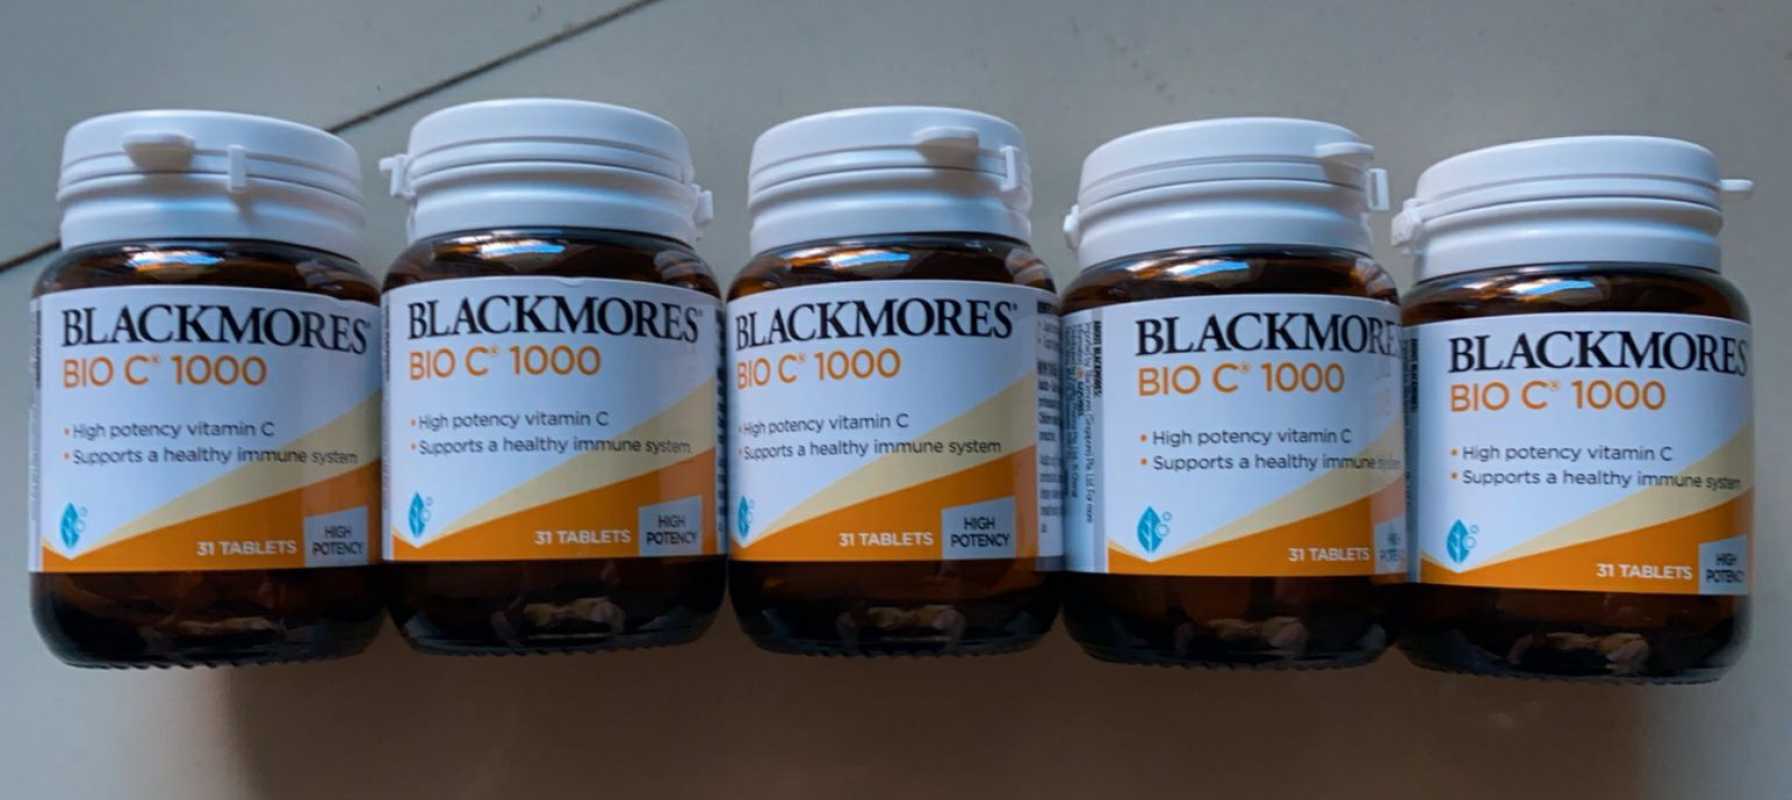 Blackmores Bio C Vitamin C 1000mg 31 Tablets Terbaru Agustus 21 Harga Murah Kualitas Terjamin Blibli